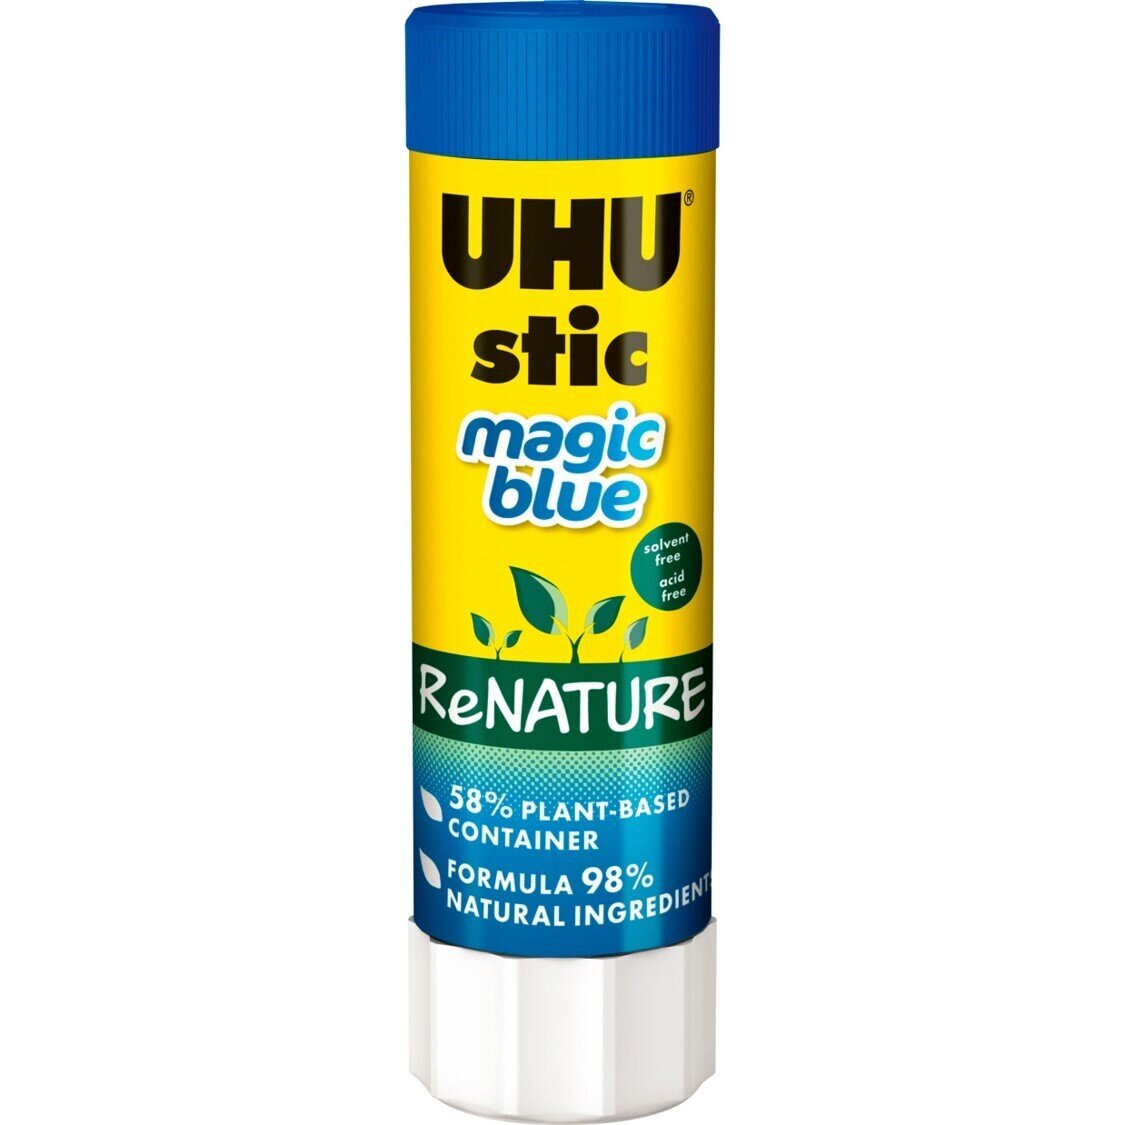 GLUE STIC UHU 21G RENATURE BLUE